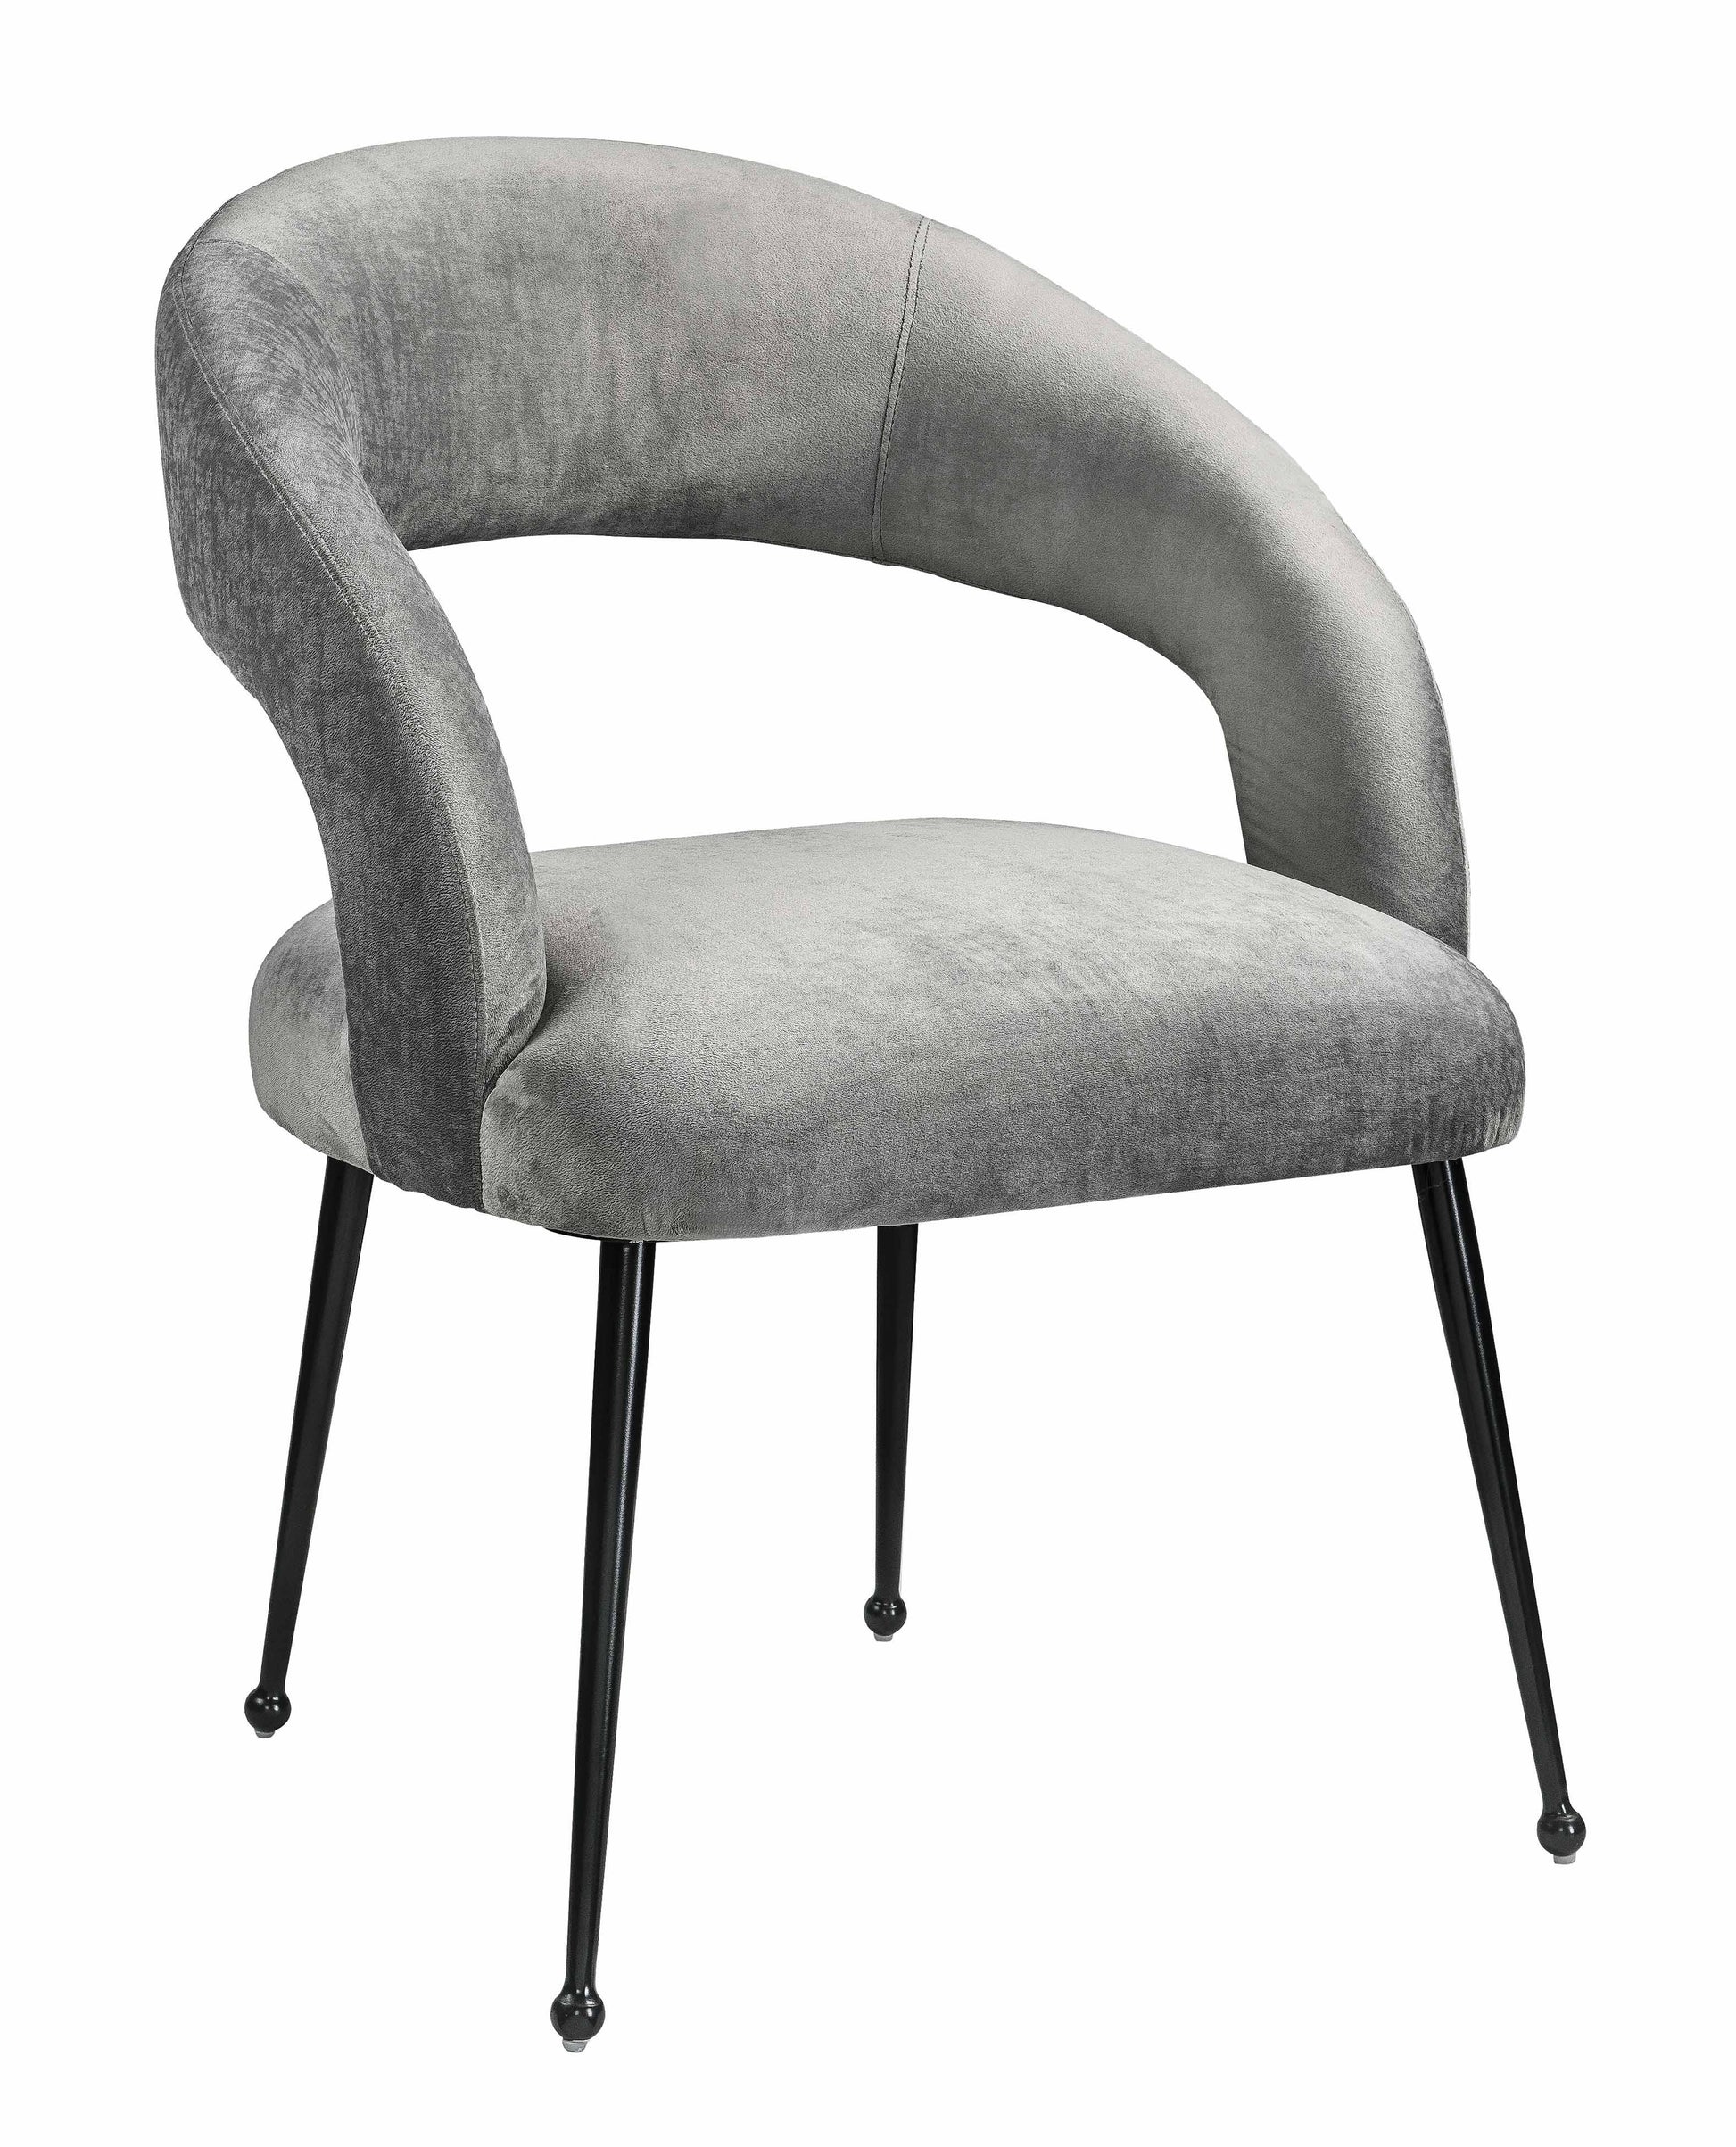 Tov Furniture Rocco Slub Grey Dining Chair